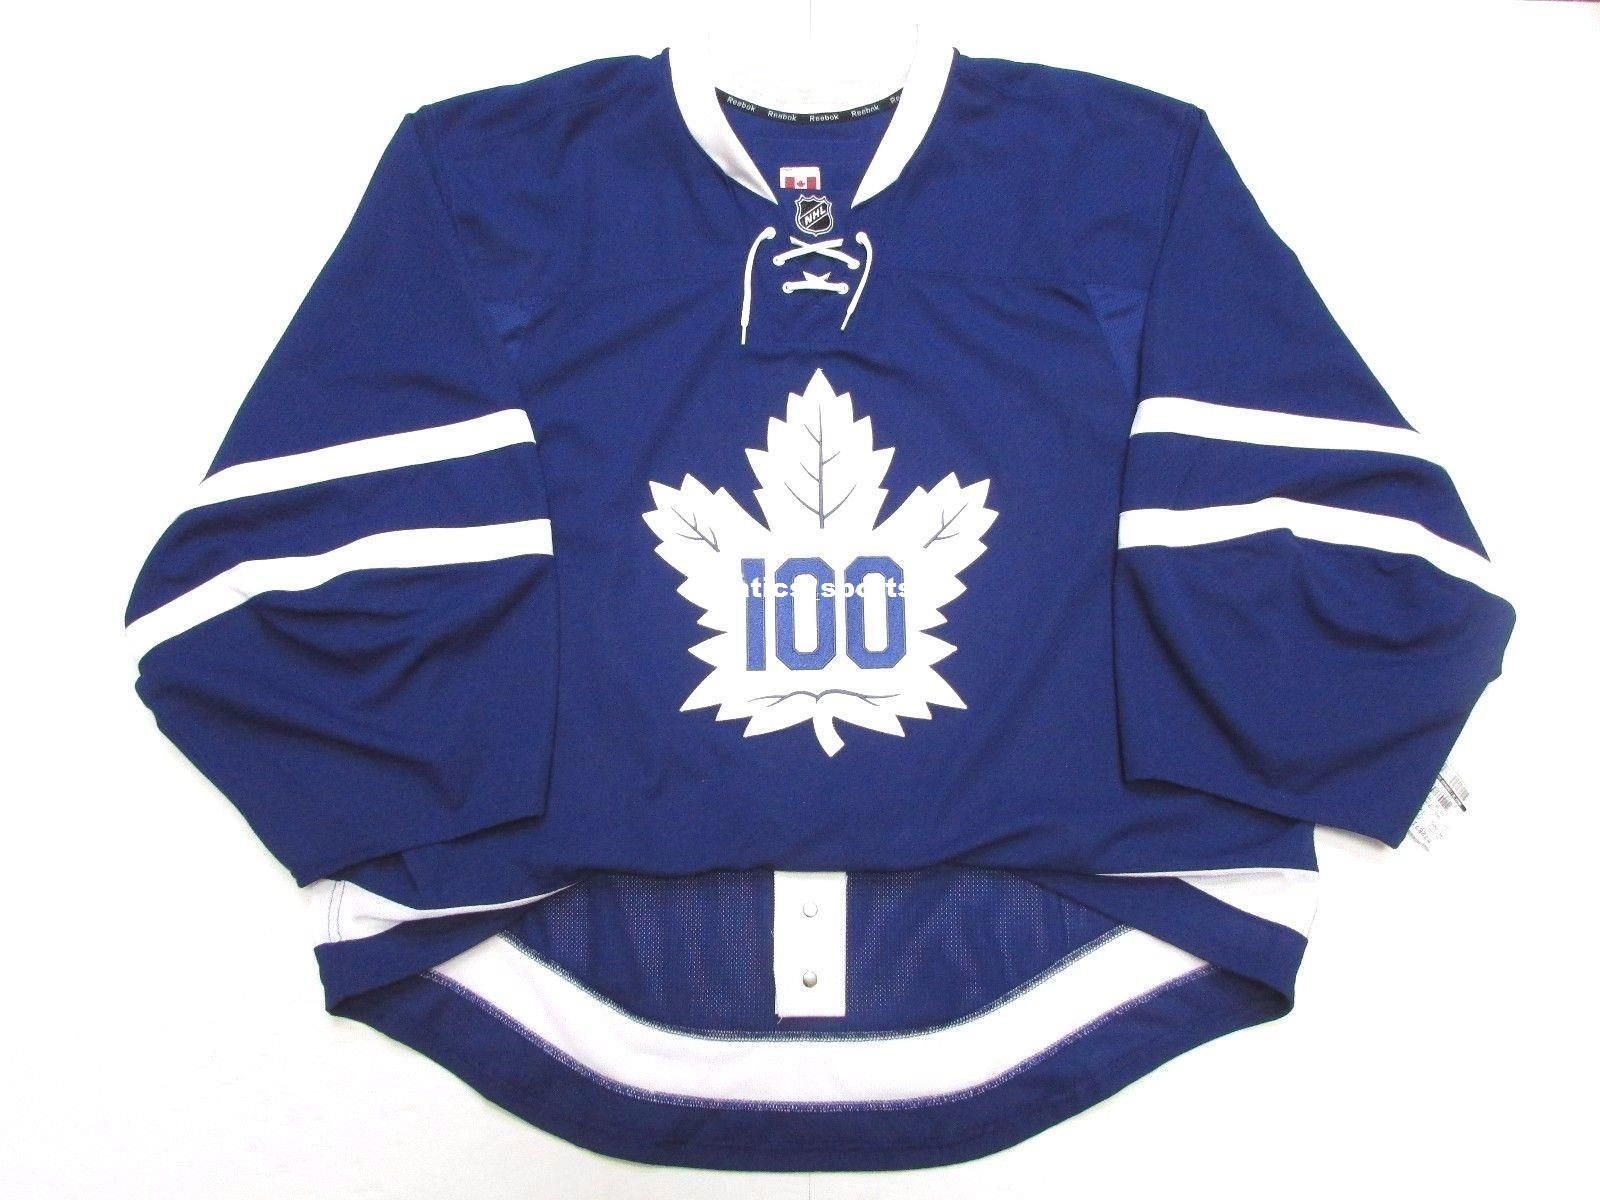 centennial classic leafs jerseys